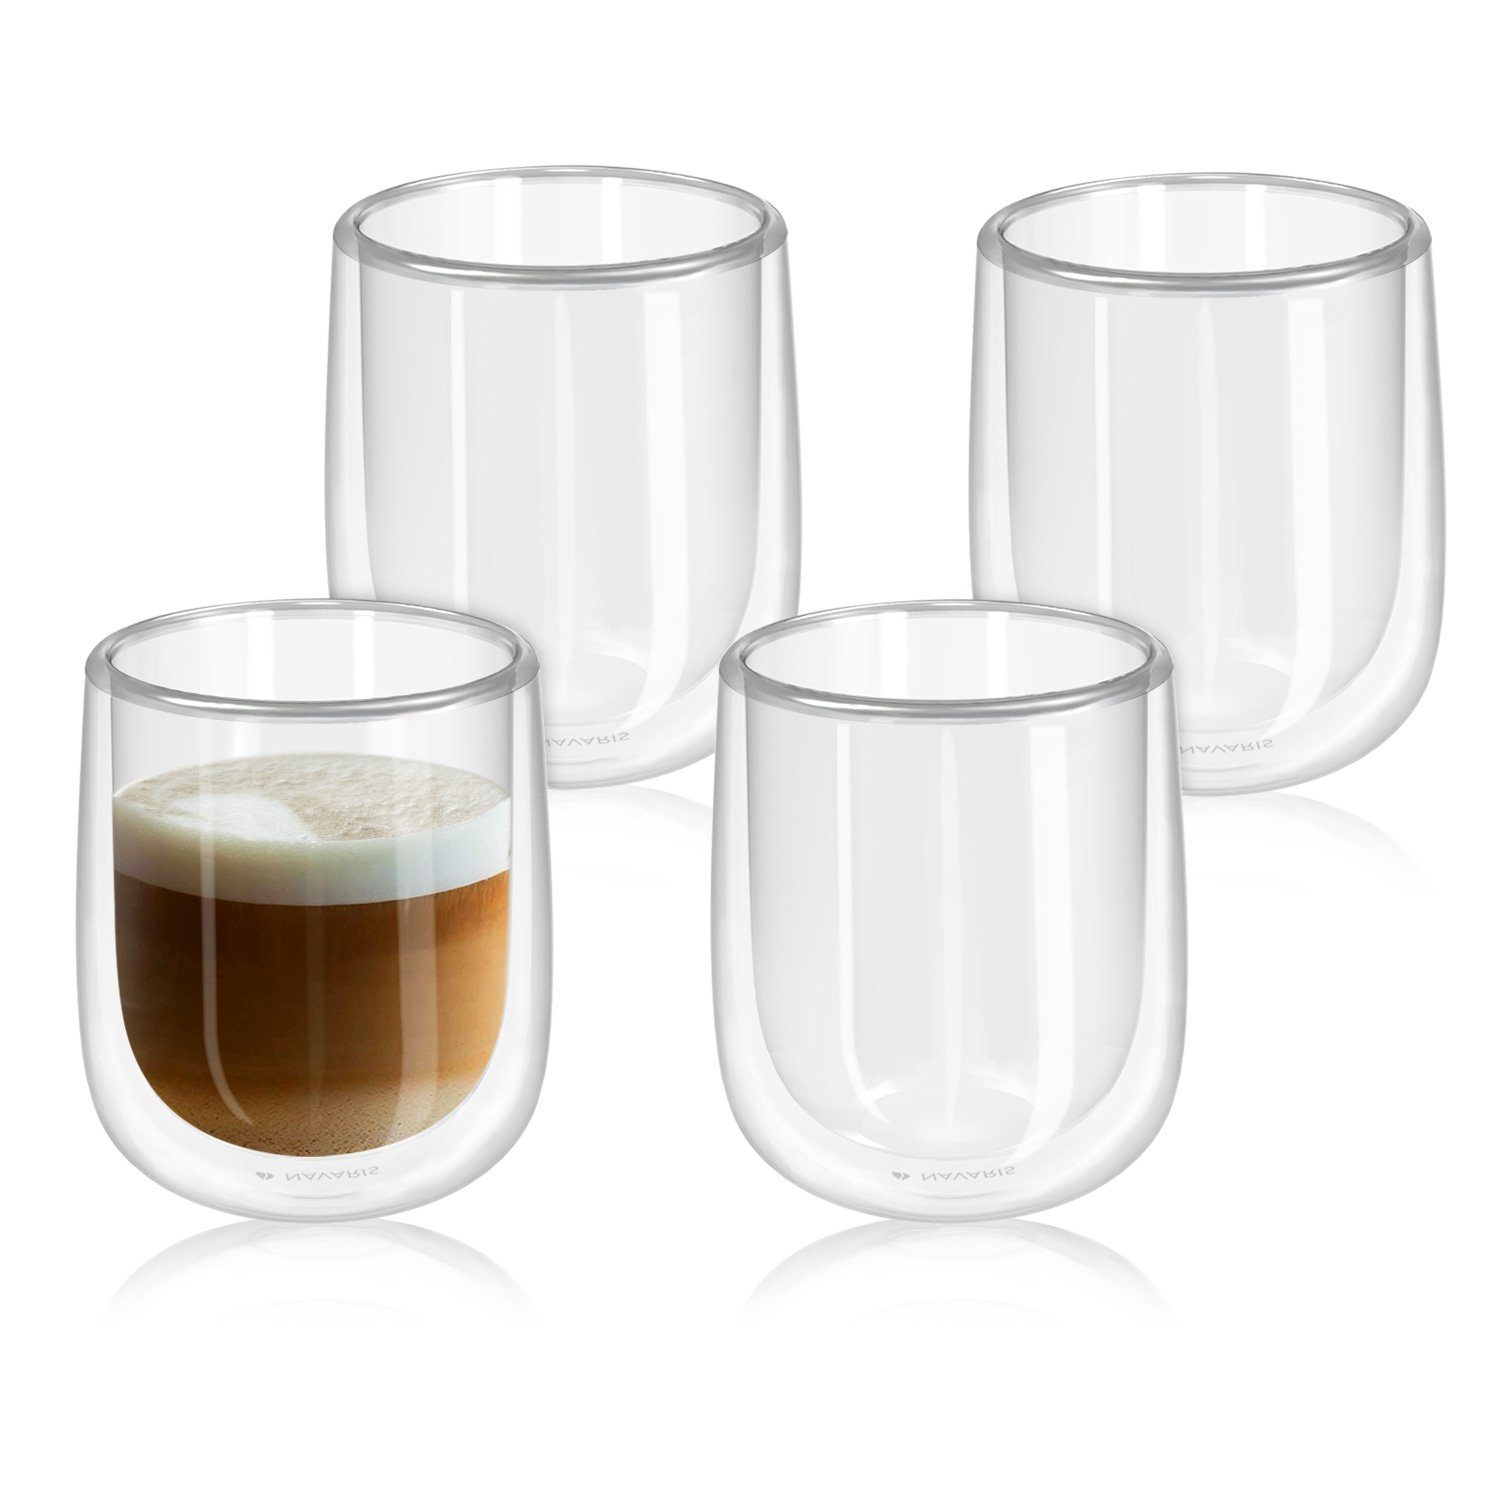 Navaris Gläser-Set, Glas, 4x doppelwandige Gläser 350ml - Thermogläser